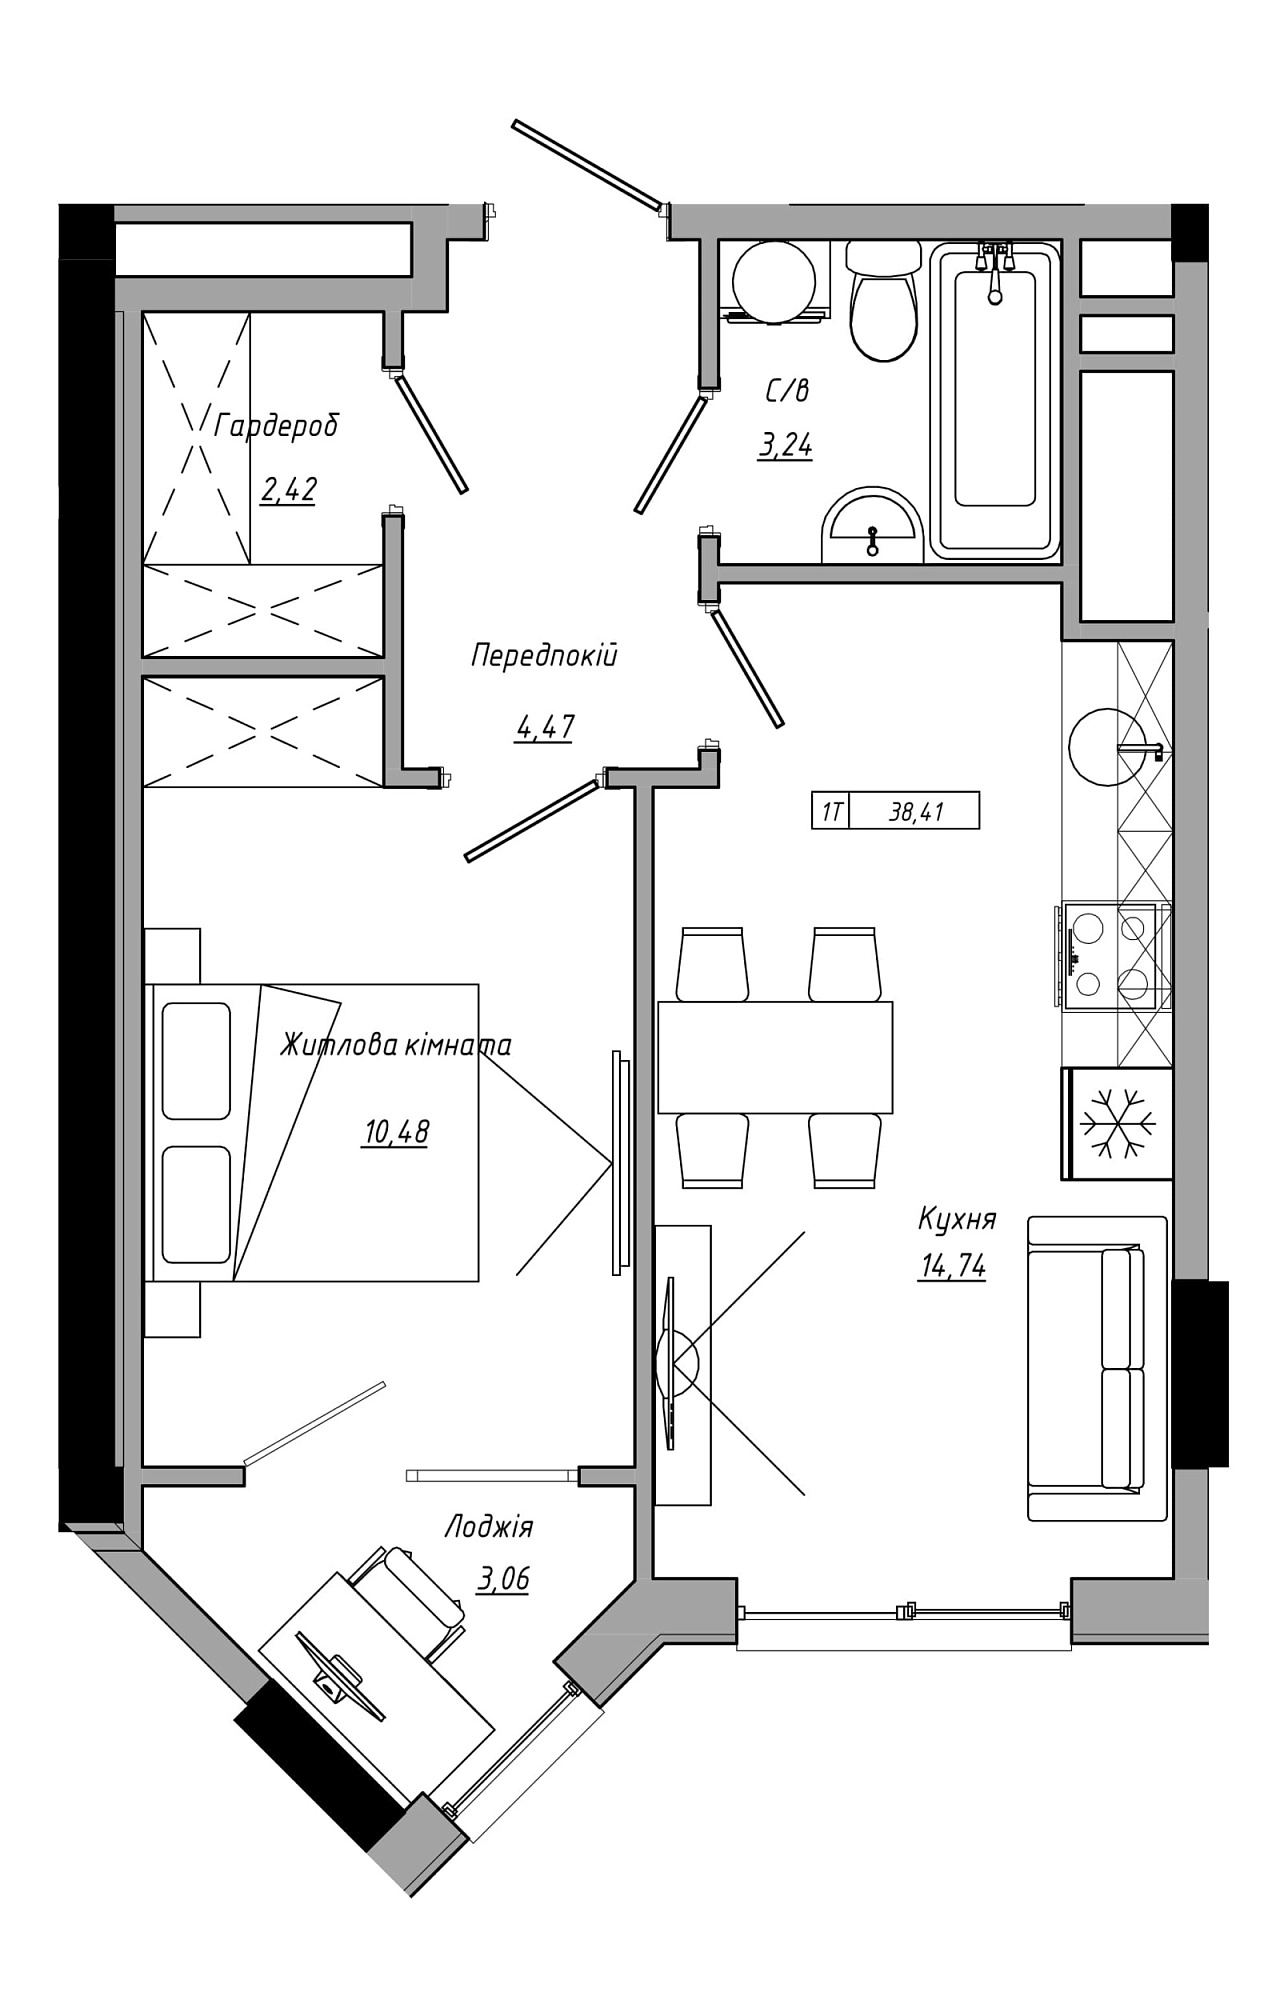 Планировка 1-к квартира площей 38.41м2, AB-21-12/00022.